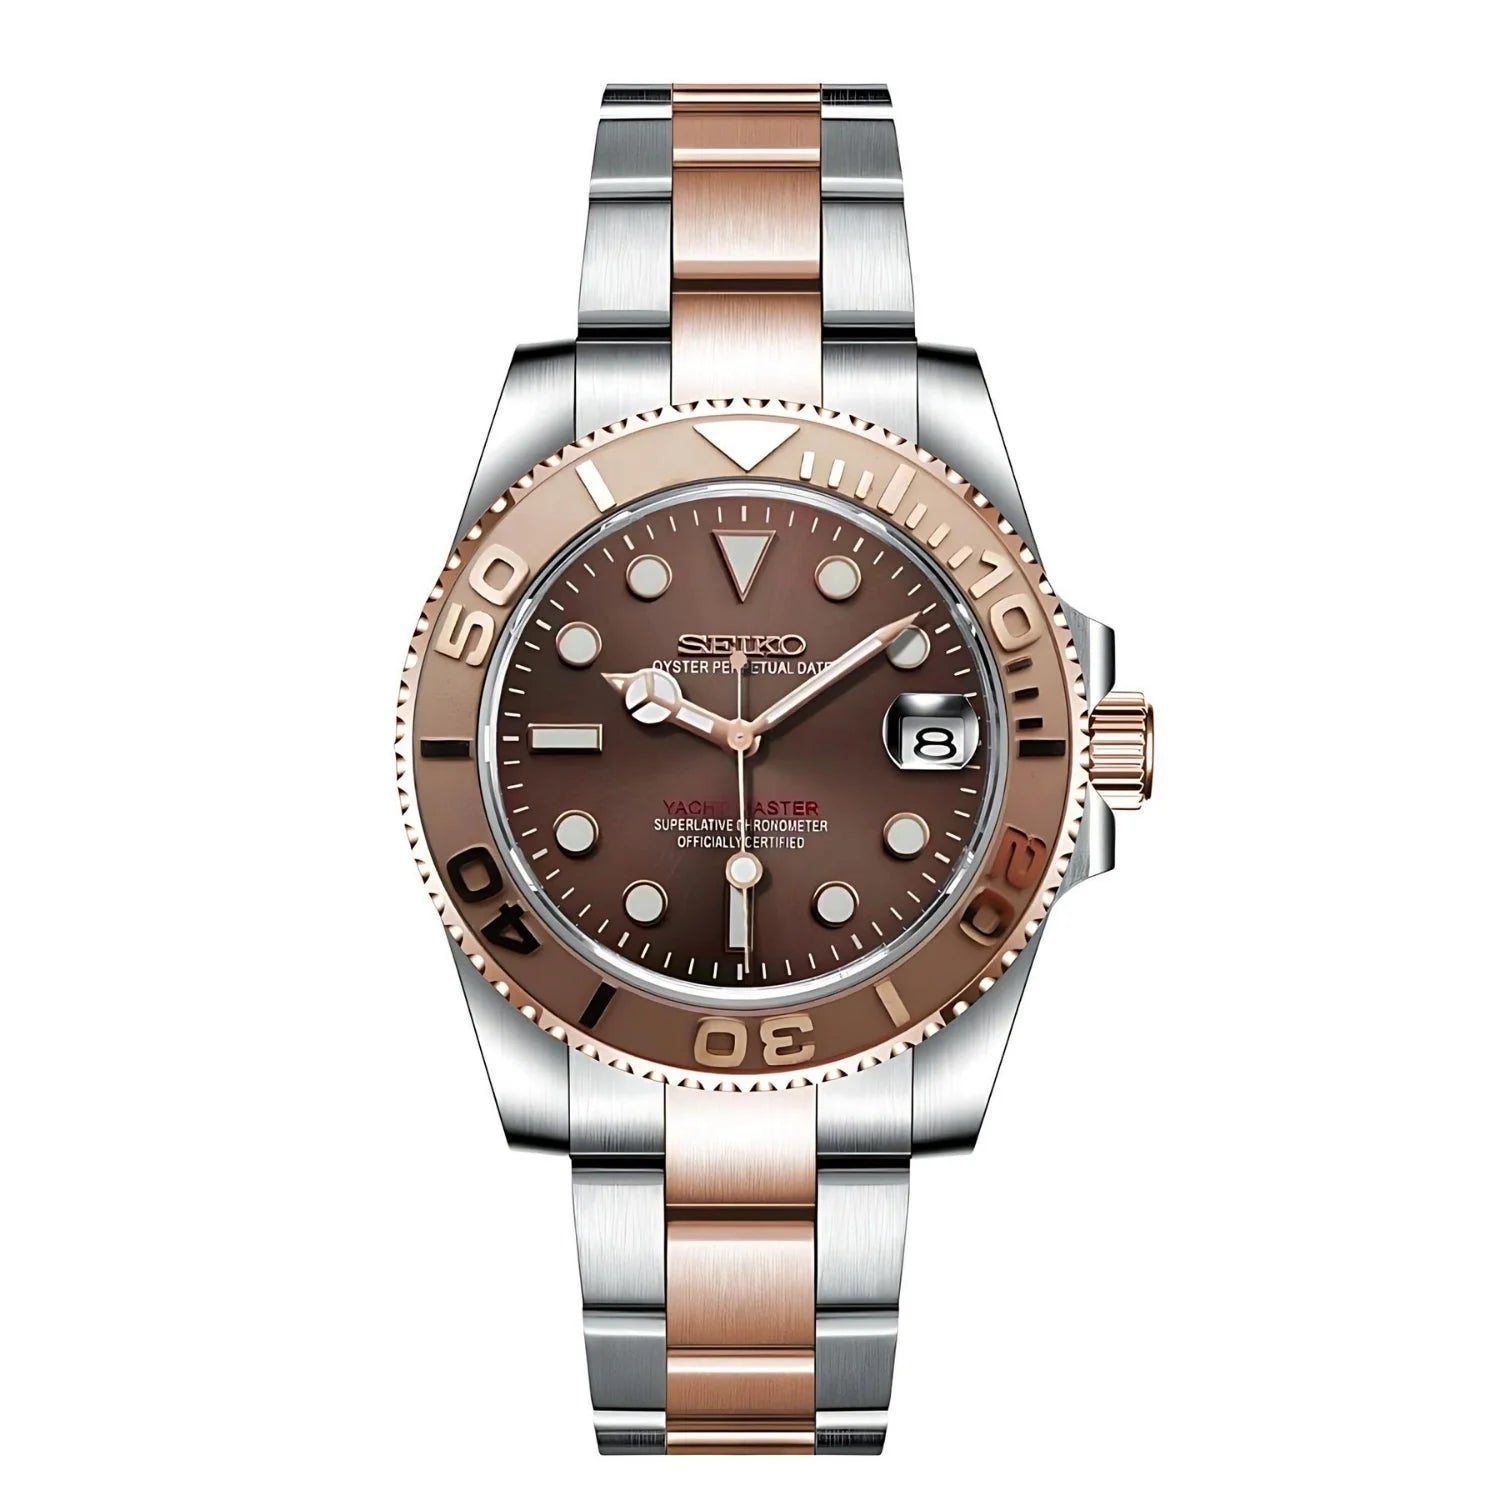 Seiko Mod Wristwatch With Brown Dial And Two-tone Bracelet - Seikomarine Rose Gold